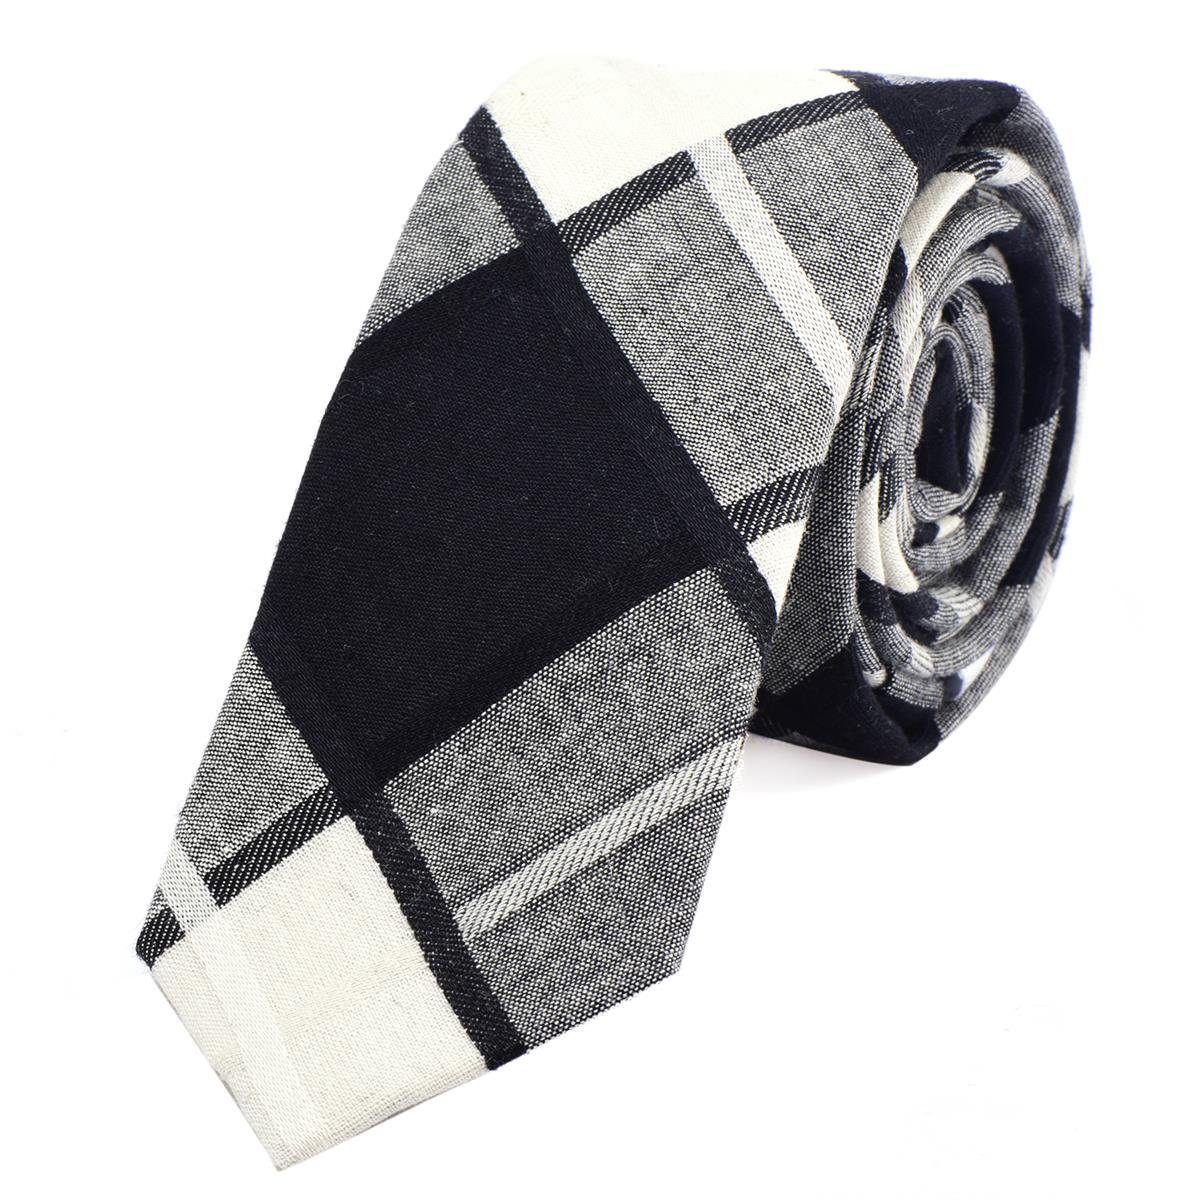 DonDon Krawatte Herren Krawatte 6 cm mit Karos oder Streifen (Packung, 1-St., 1x Krawatte) Baumwolle, kariert oder gestreift, für Büro oder festliche Veranstaltungen elfenbein-weiß-schwarz kariert 2